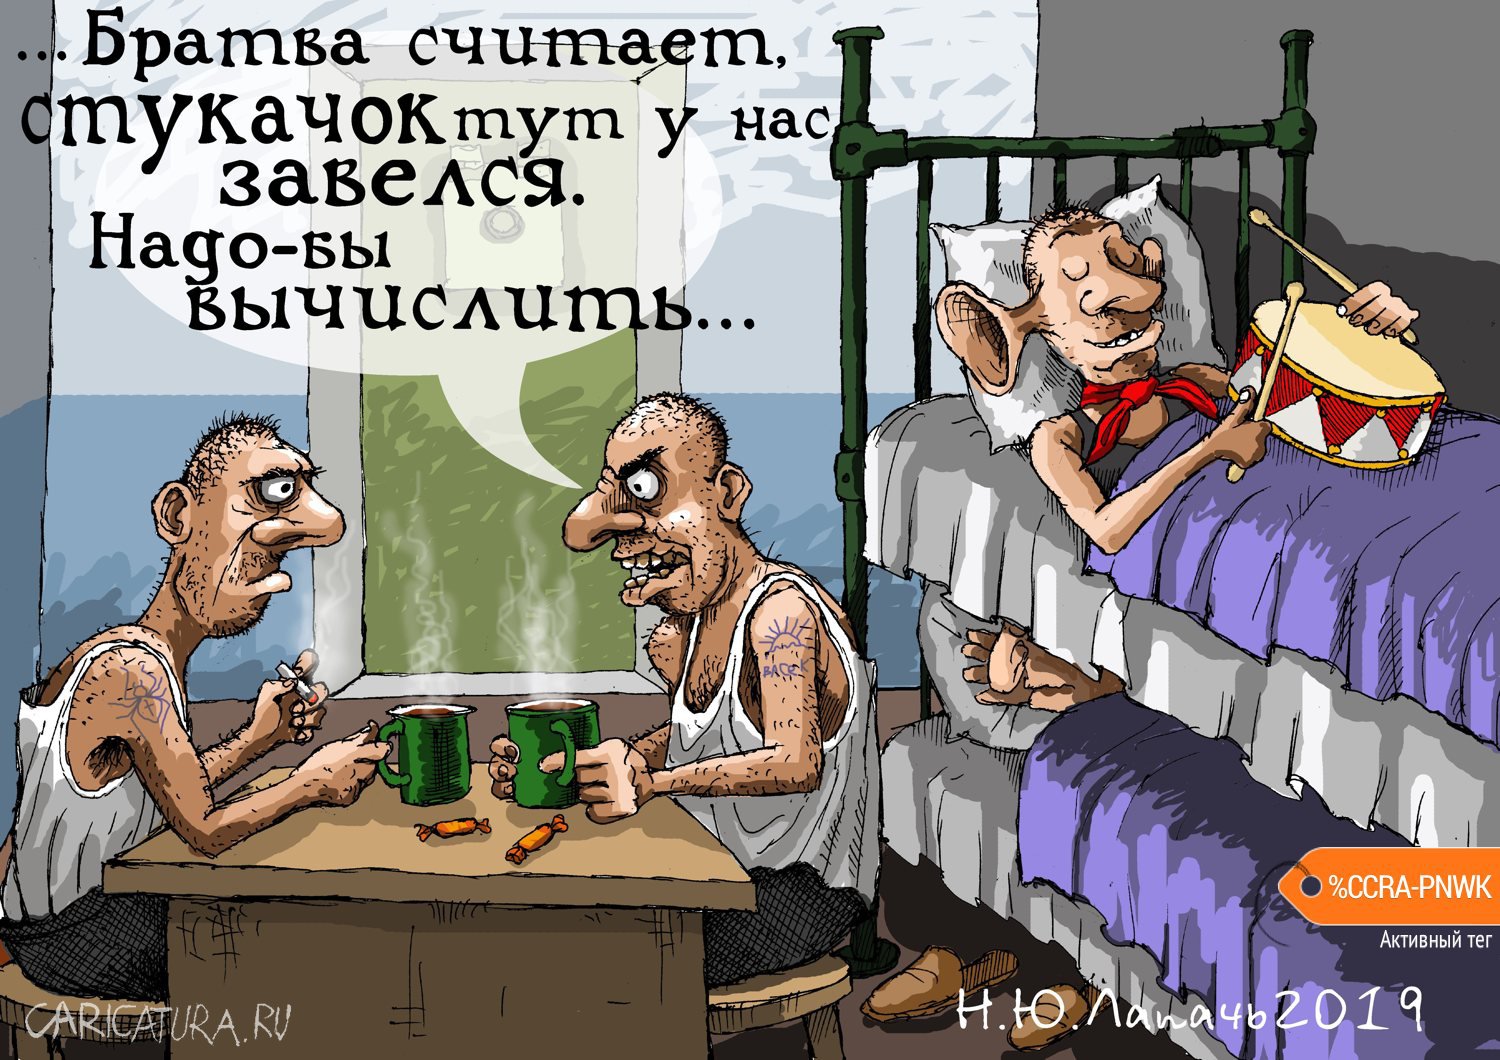 Карикатура "Глаз замылился", Теплый Телогрей